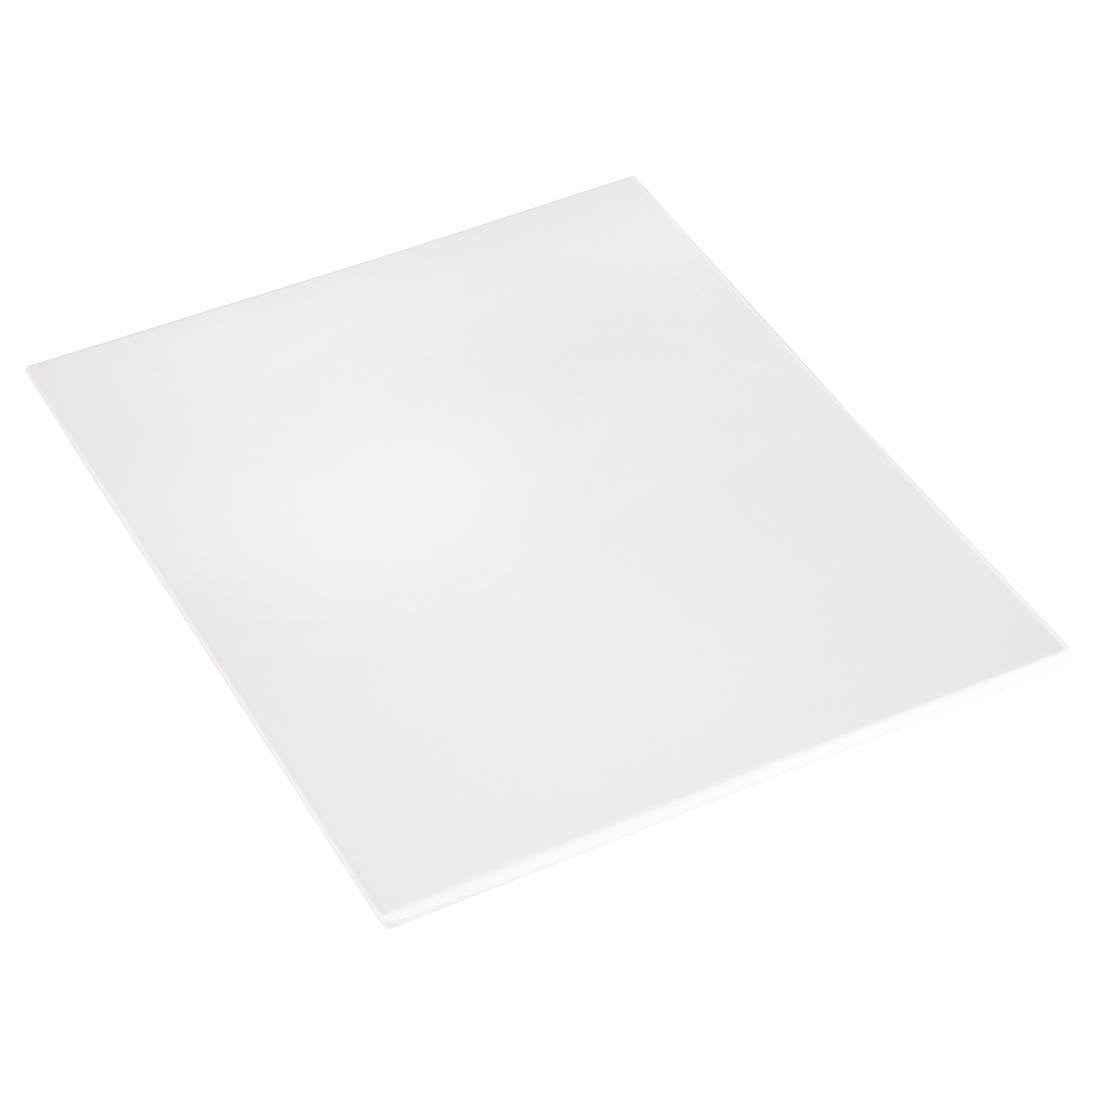 APS Zero Melamine Platter White GN 1/2 - GK851  - 1